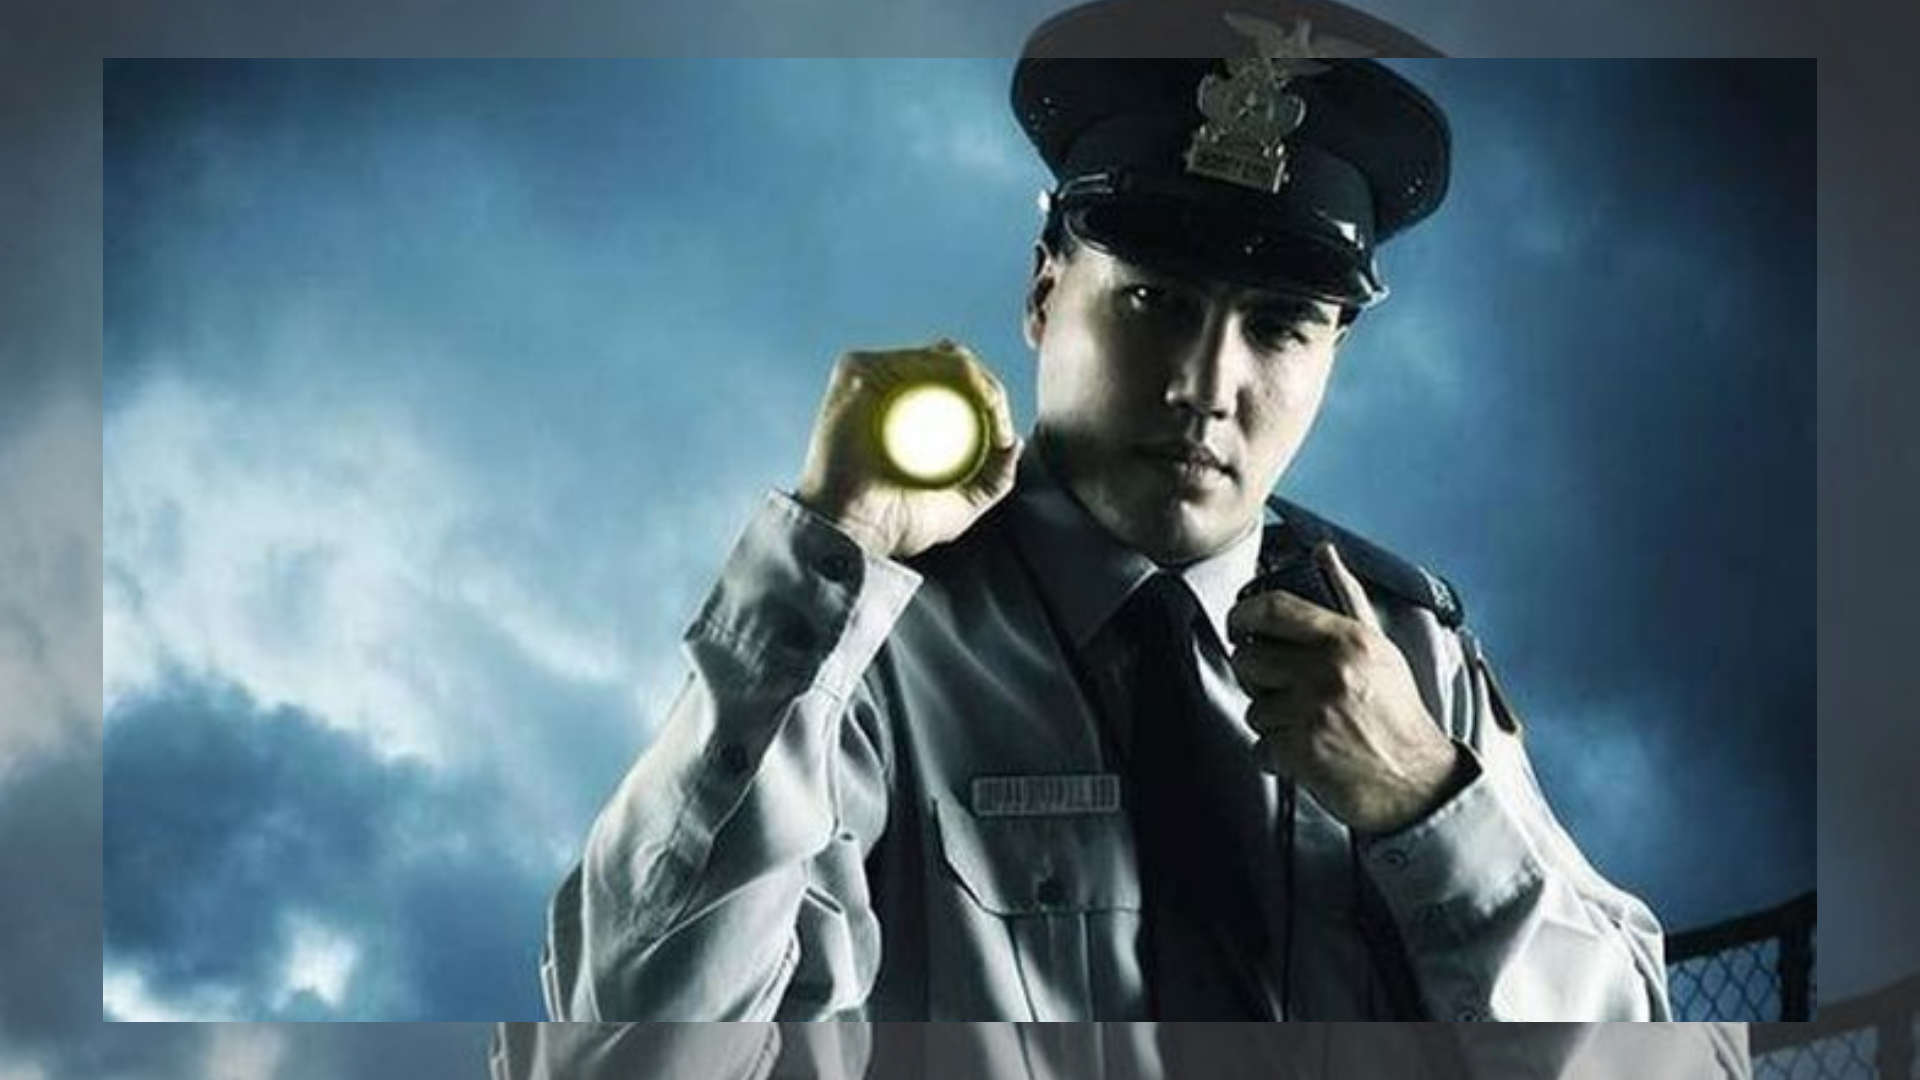 Тихий сторож. Полицейский фонарик. Охранник с фонариком. Полицейский светит фонариком.